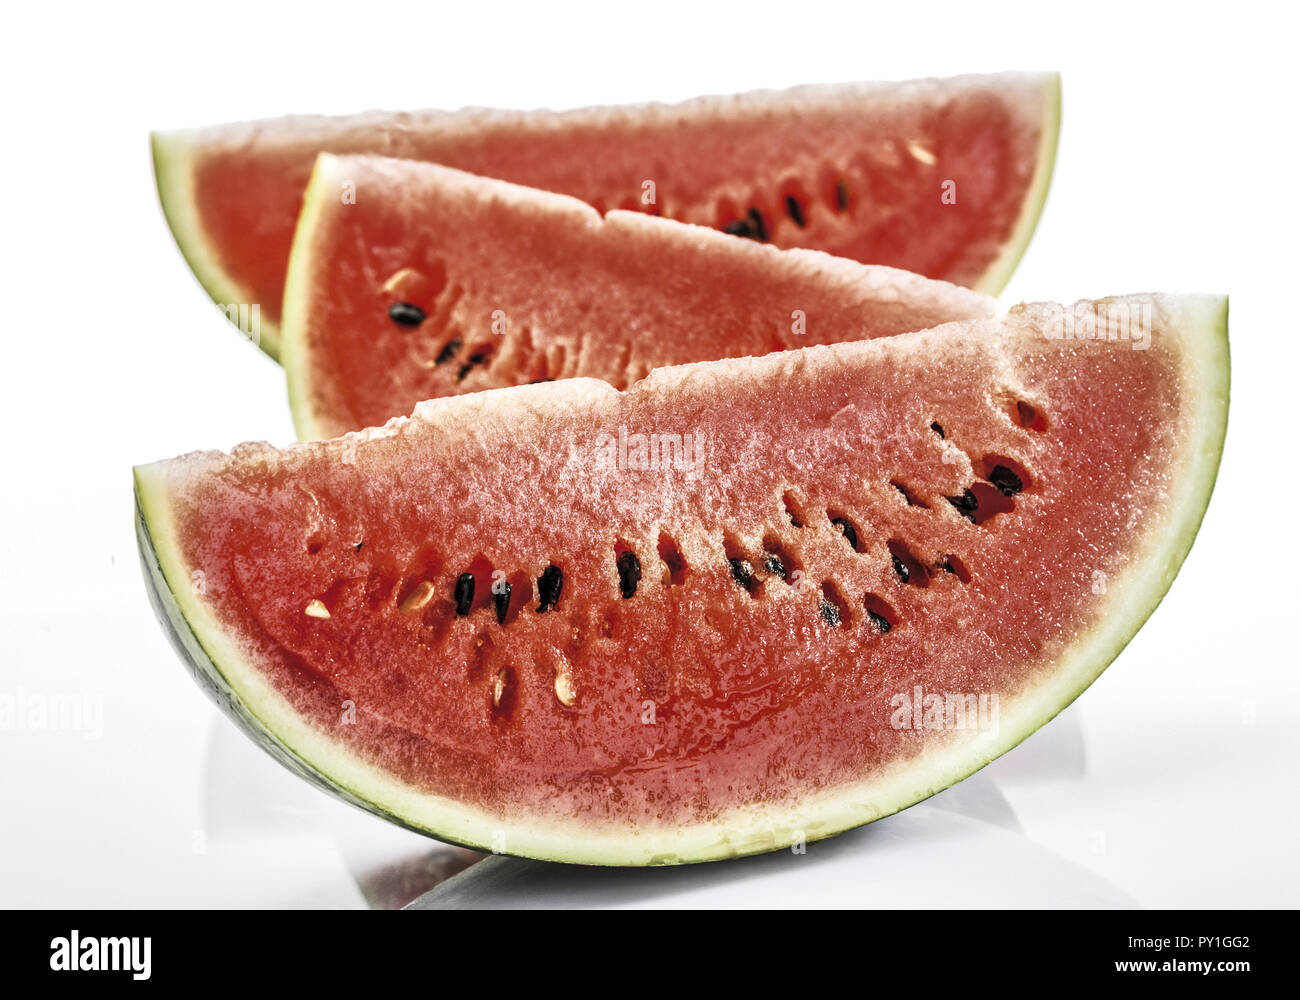 Wassermelone, aufgeschnitten Stock Photo